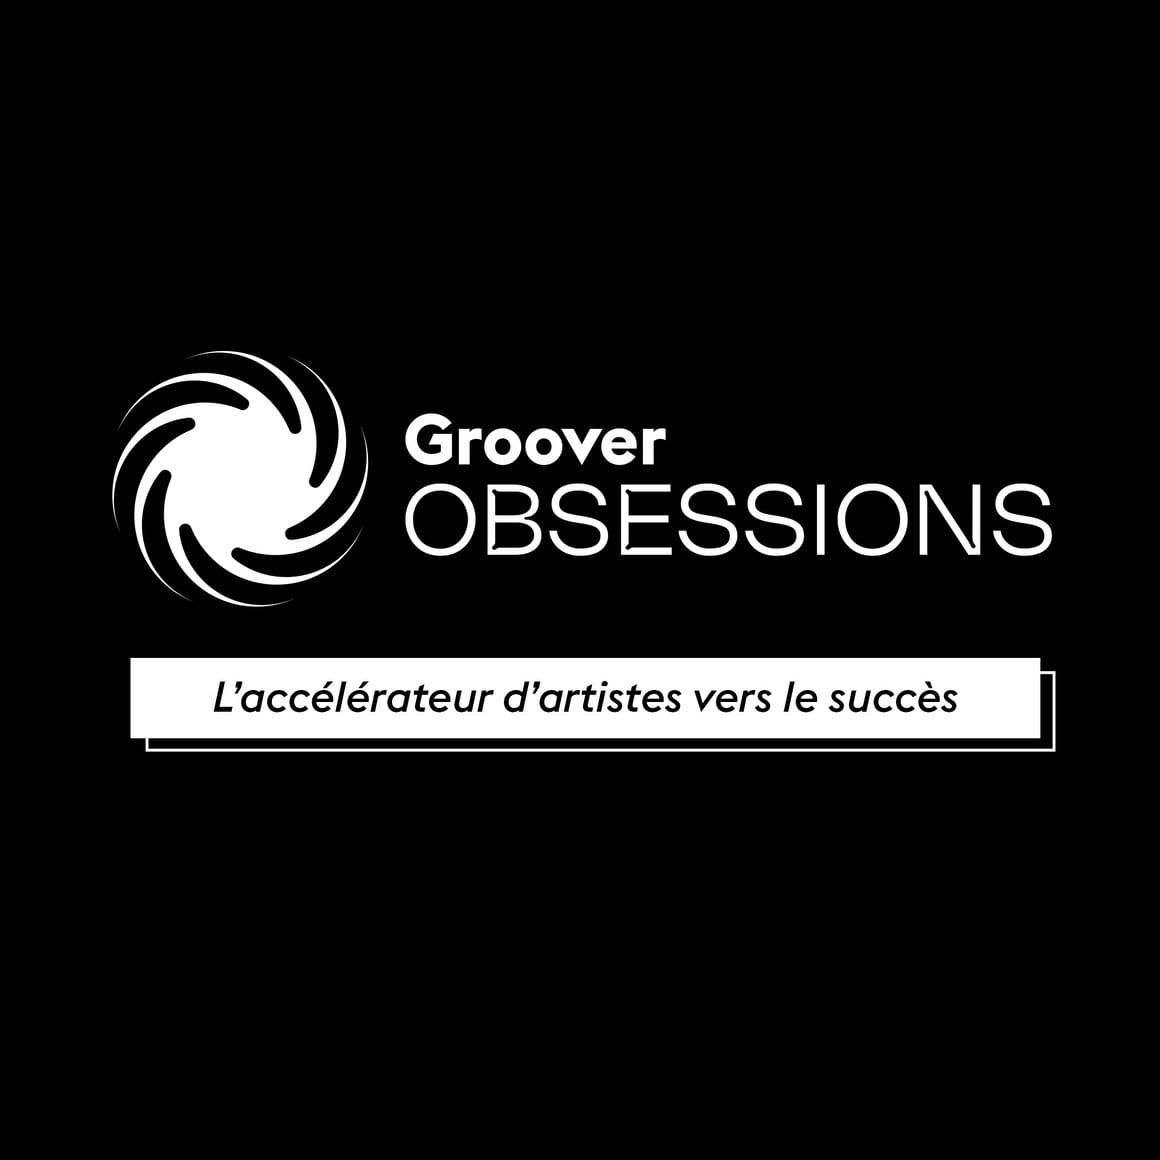 Bannière pour Groover Obsessions, nom et slogan en blanc sur fond noir